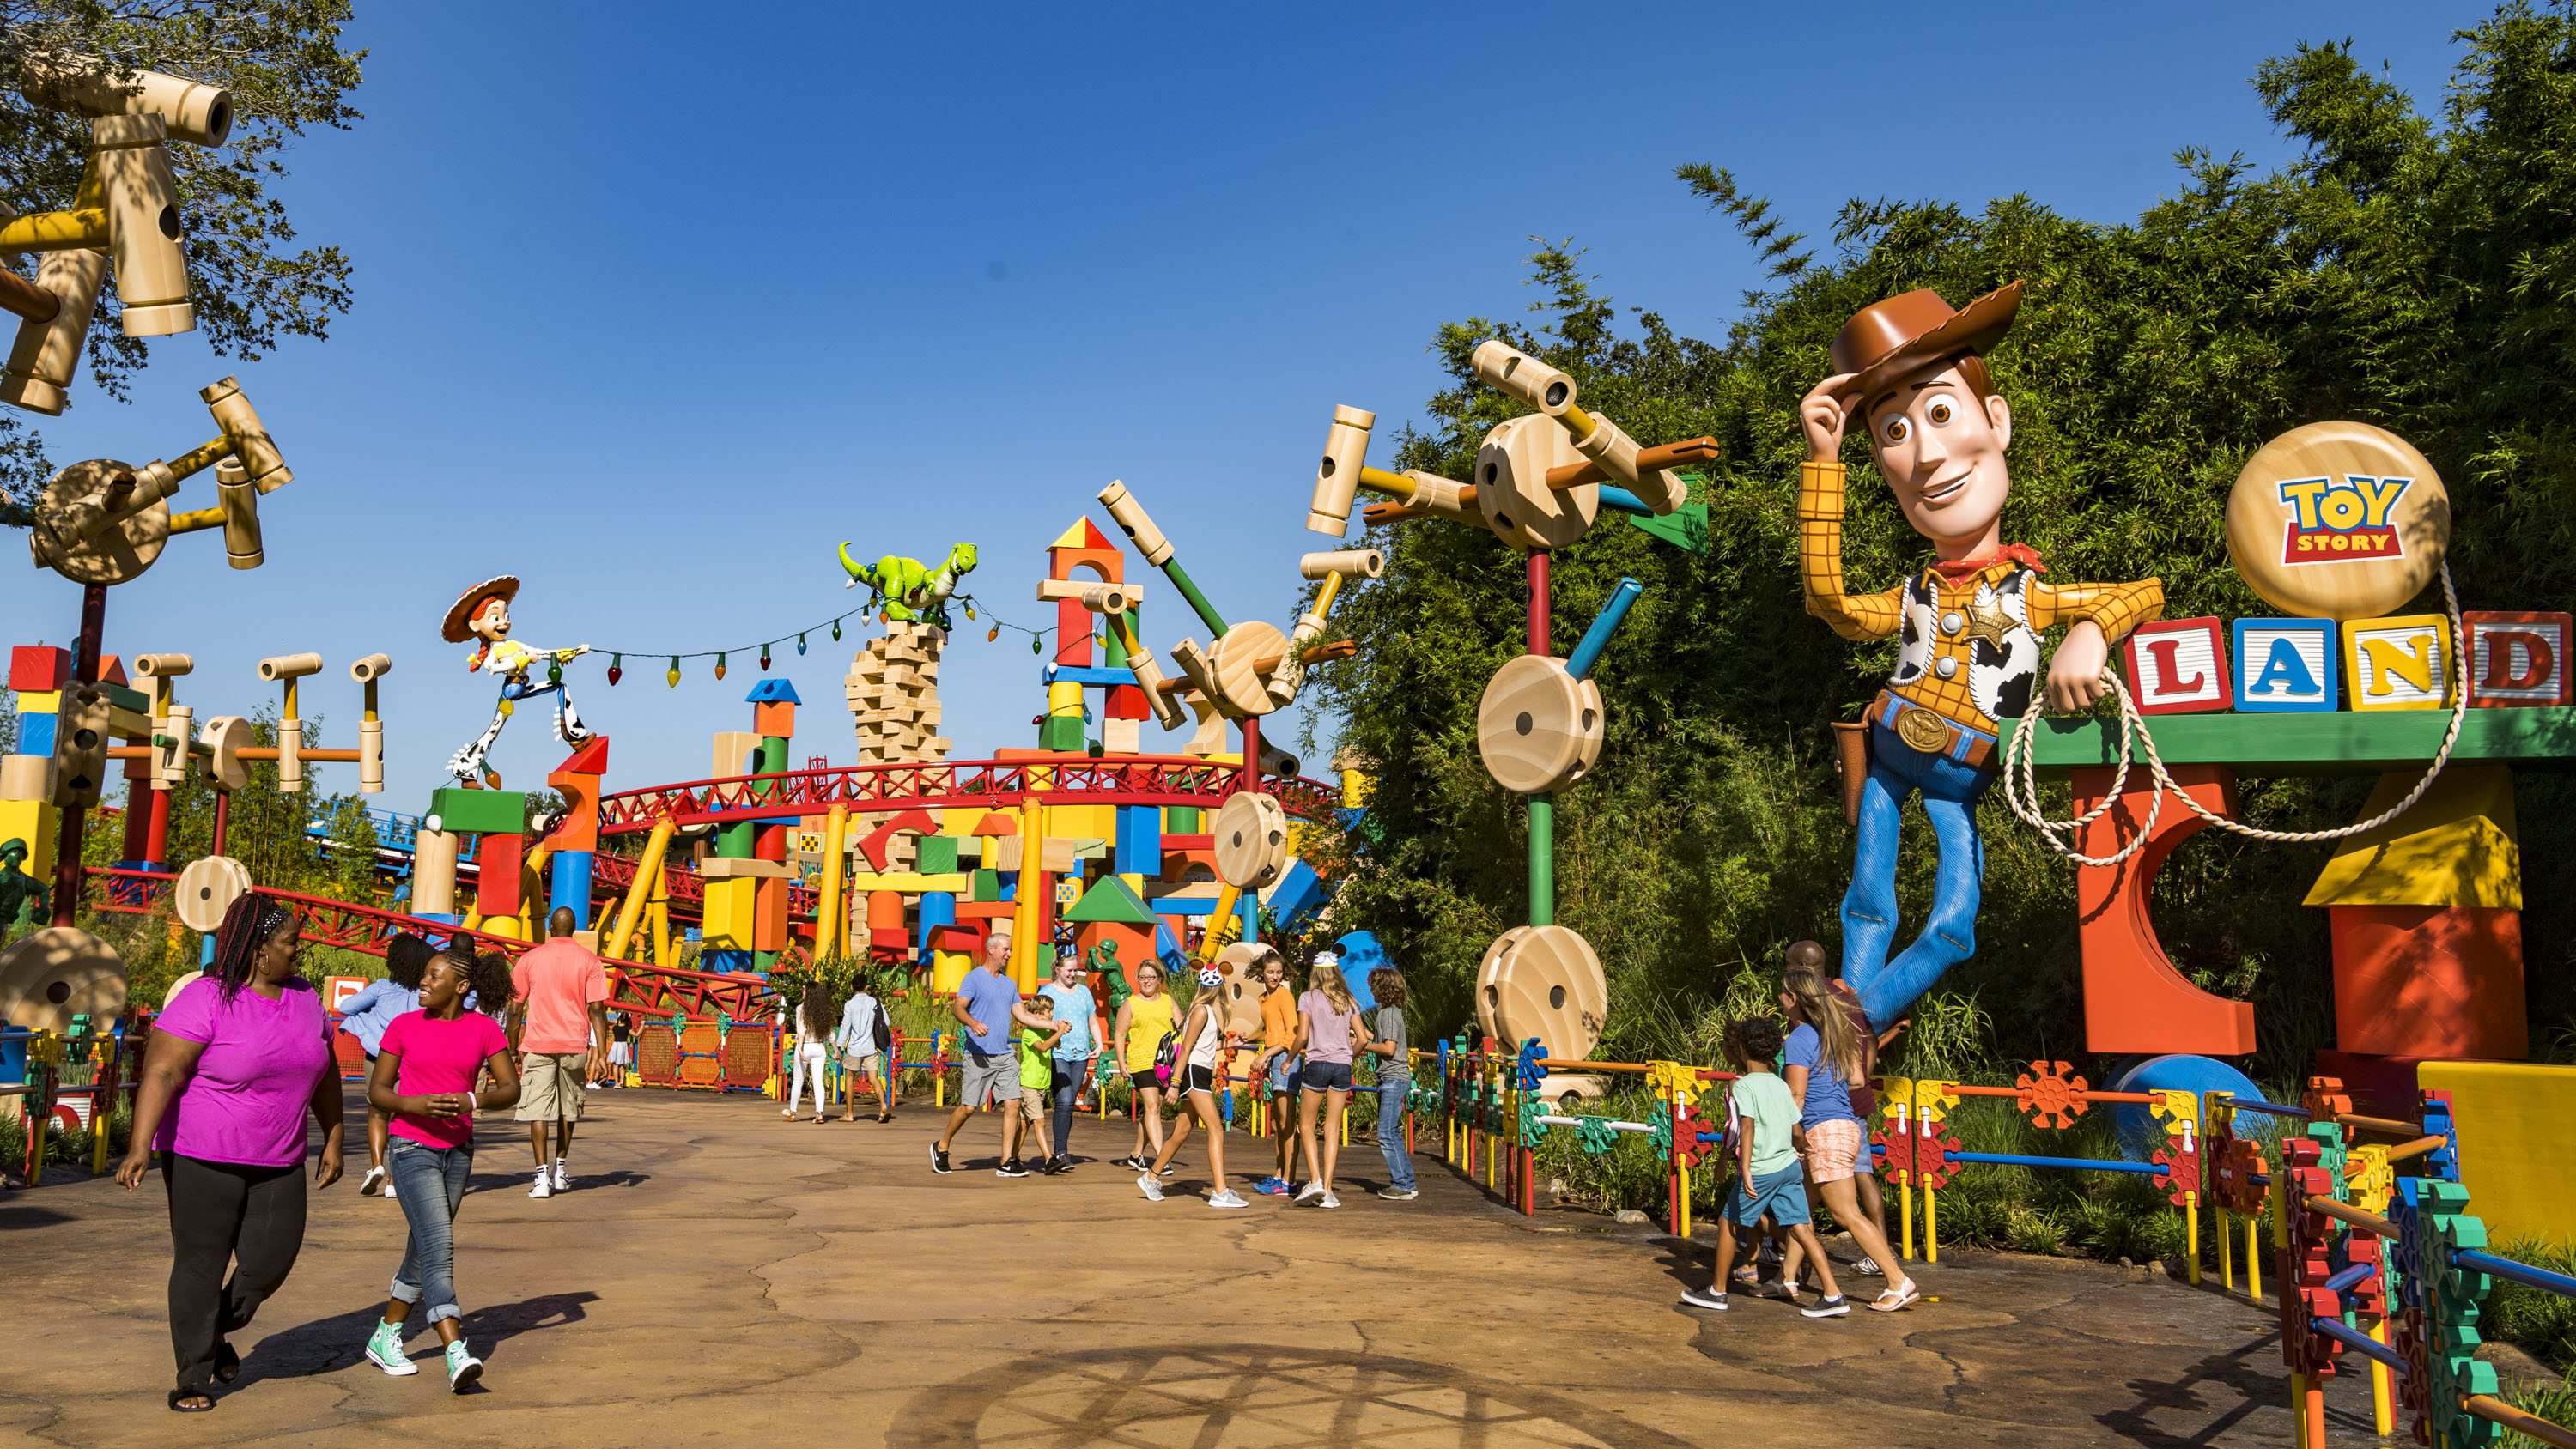 PHOTOS - Take a tour through Toy Story Land